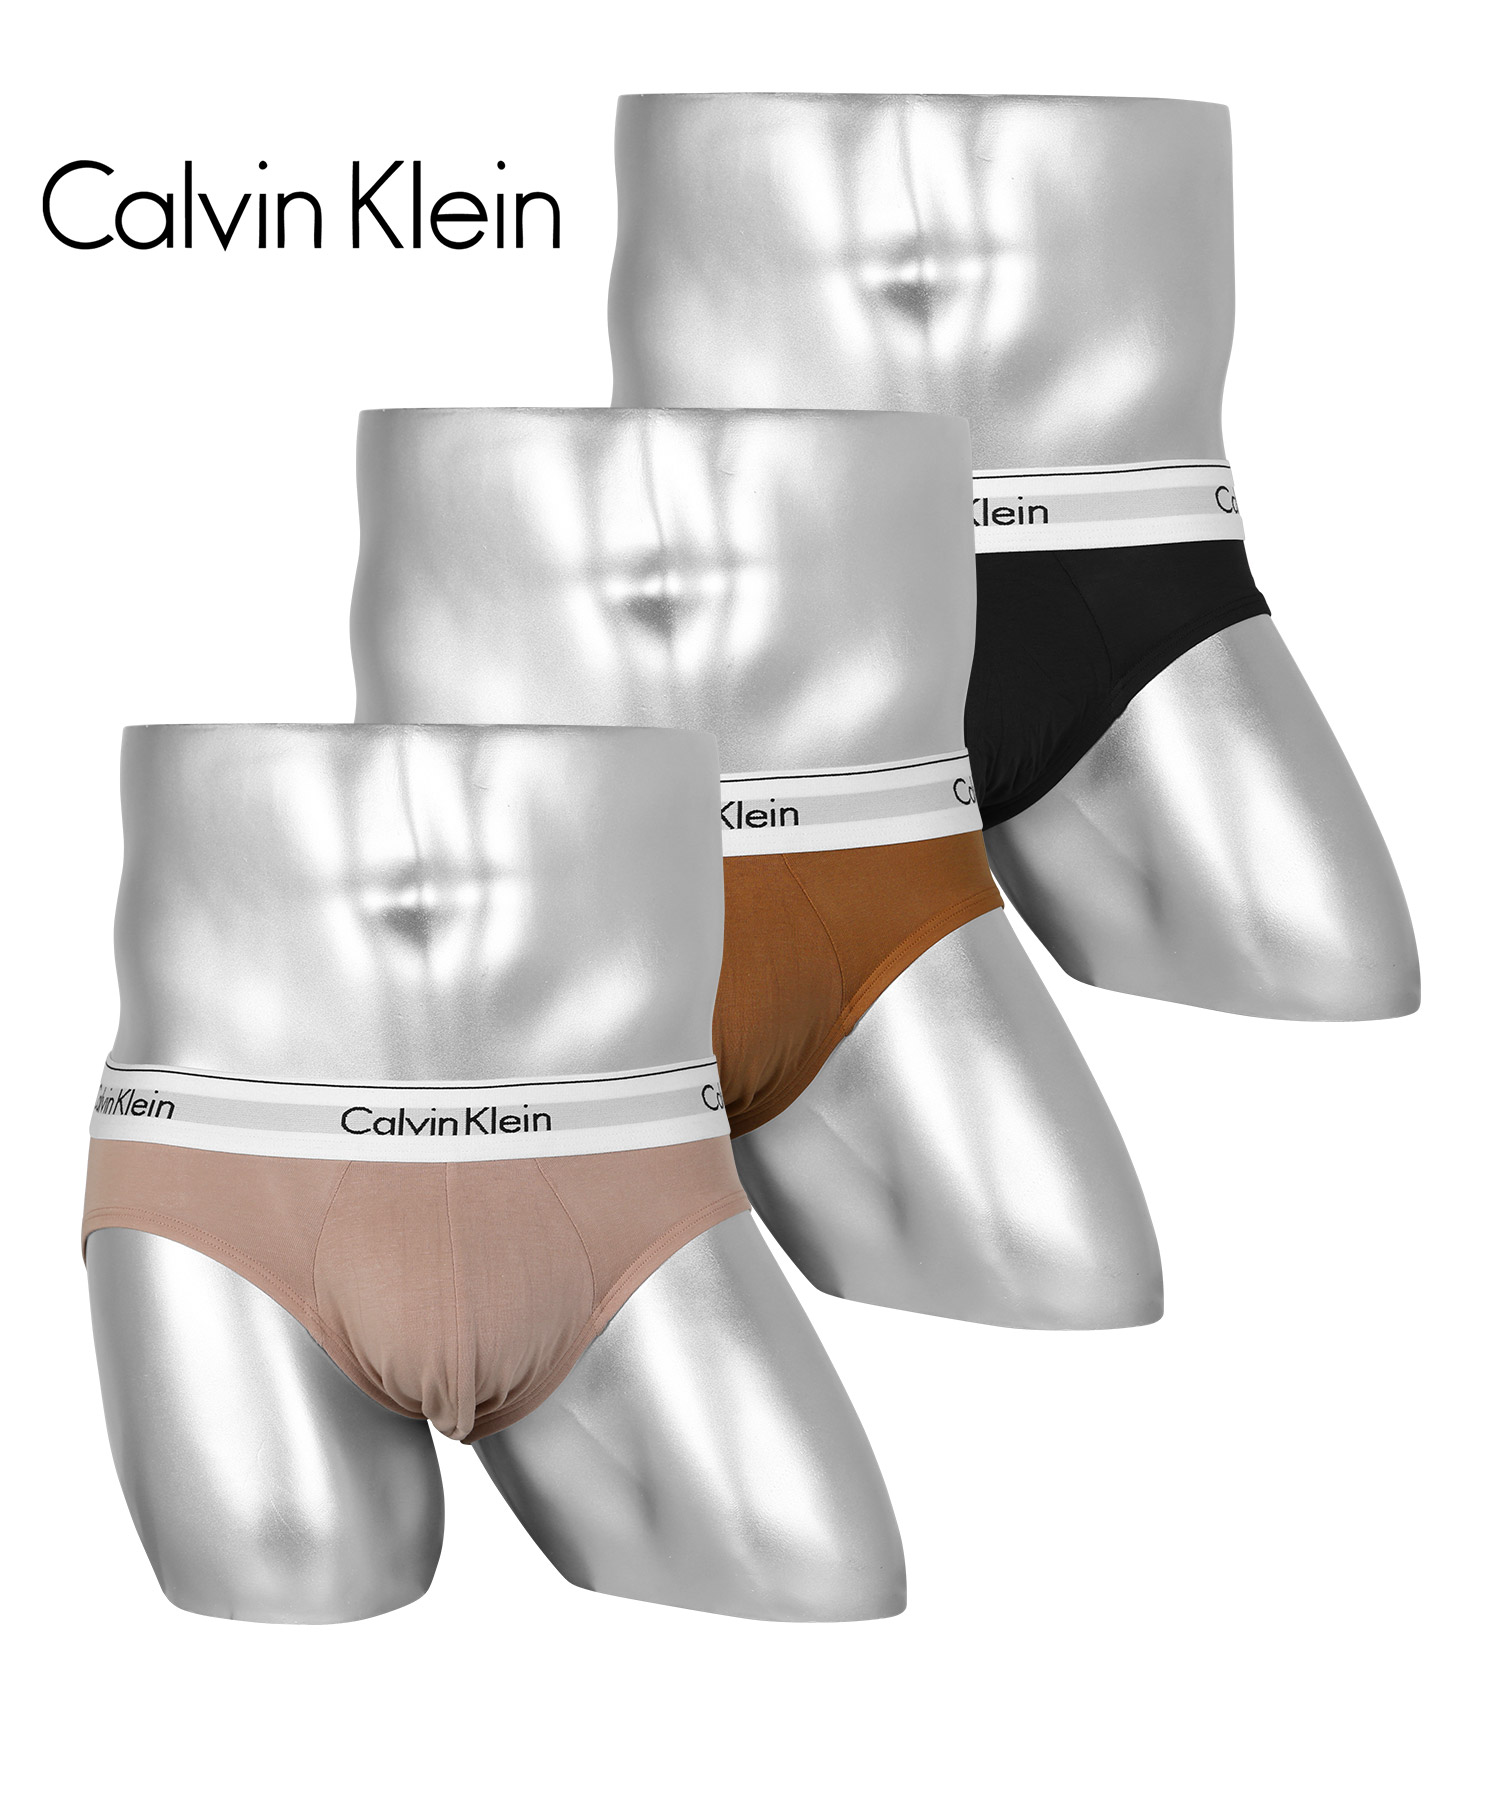 カルバンクライン Calvin Klein ブリーフ 3枚セット メンズ アンダーウェア 男性下着 綿混 コットン CK ロゴ 高級 ハイブランド